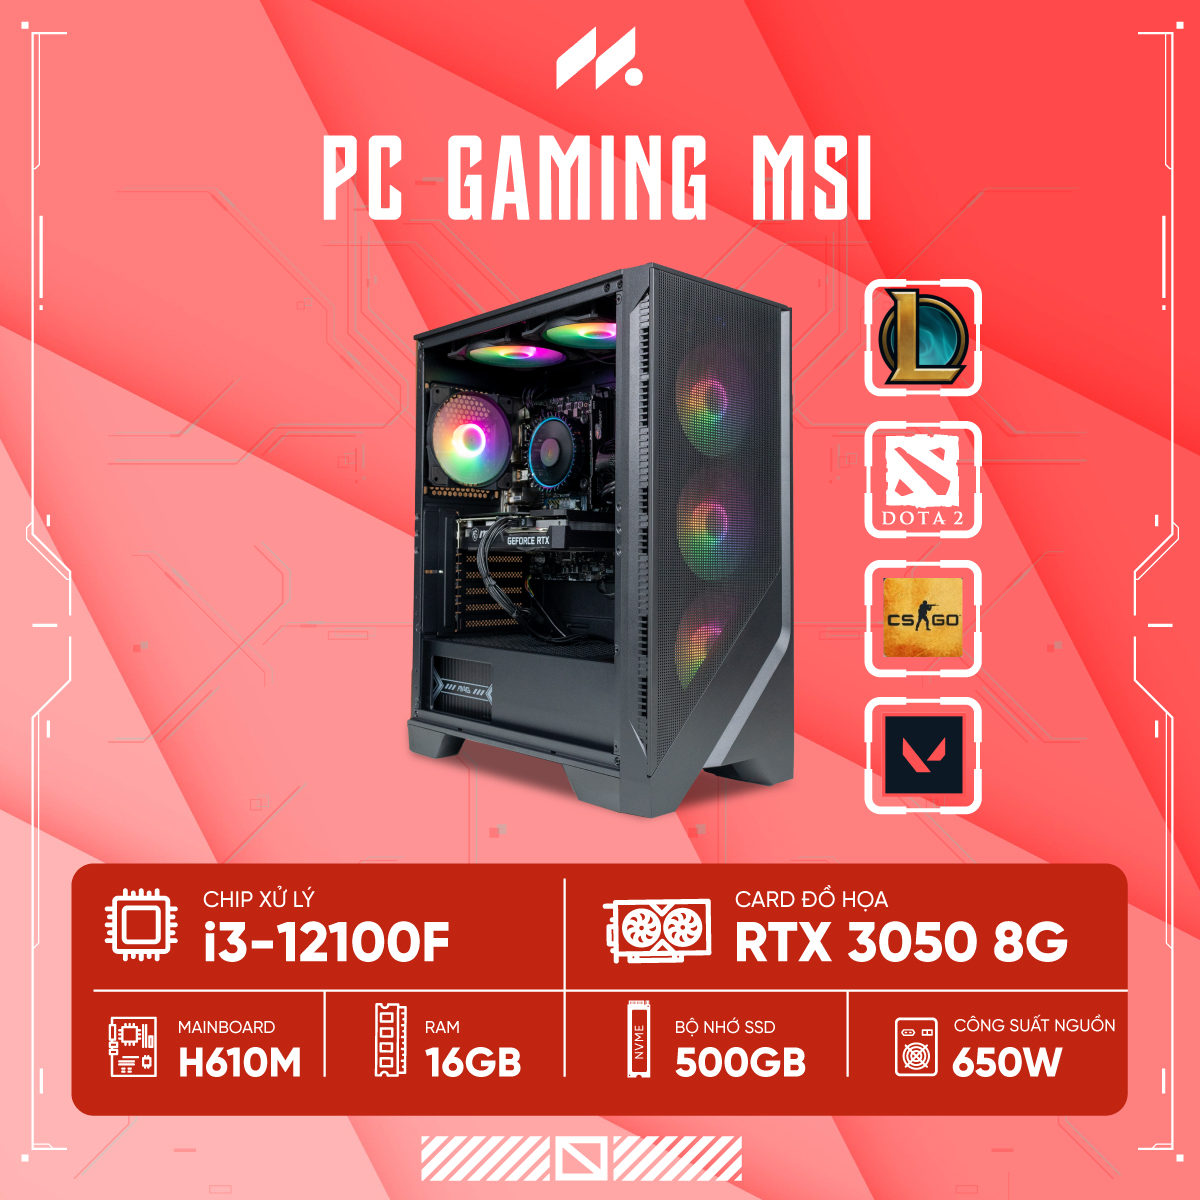 PC GAMING MSI i3-3050 (i3-12100F, RTX 3050 OC 8G, Ram 16GB DDR4, SSD 500GB, 650W)